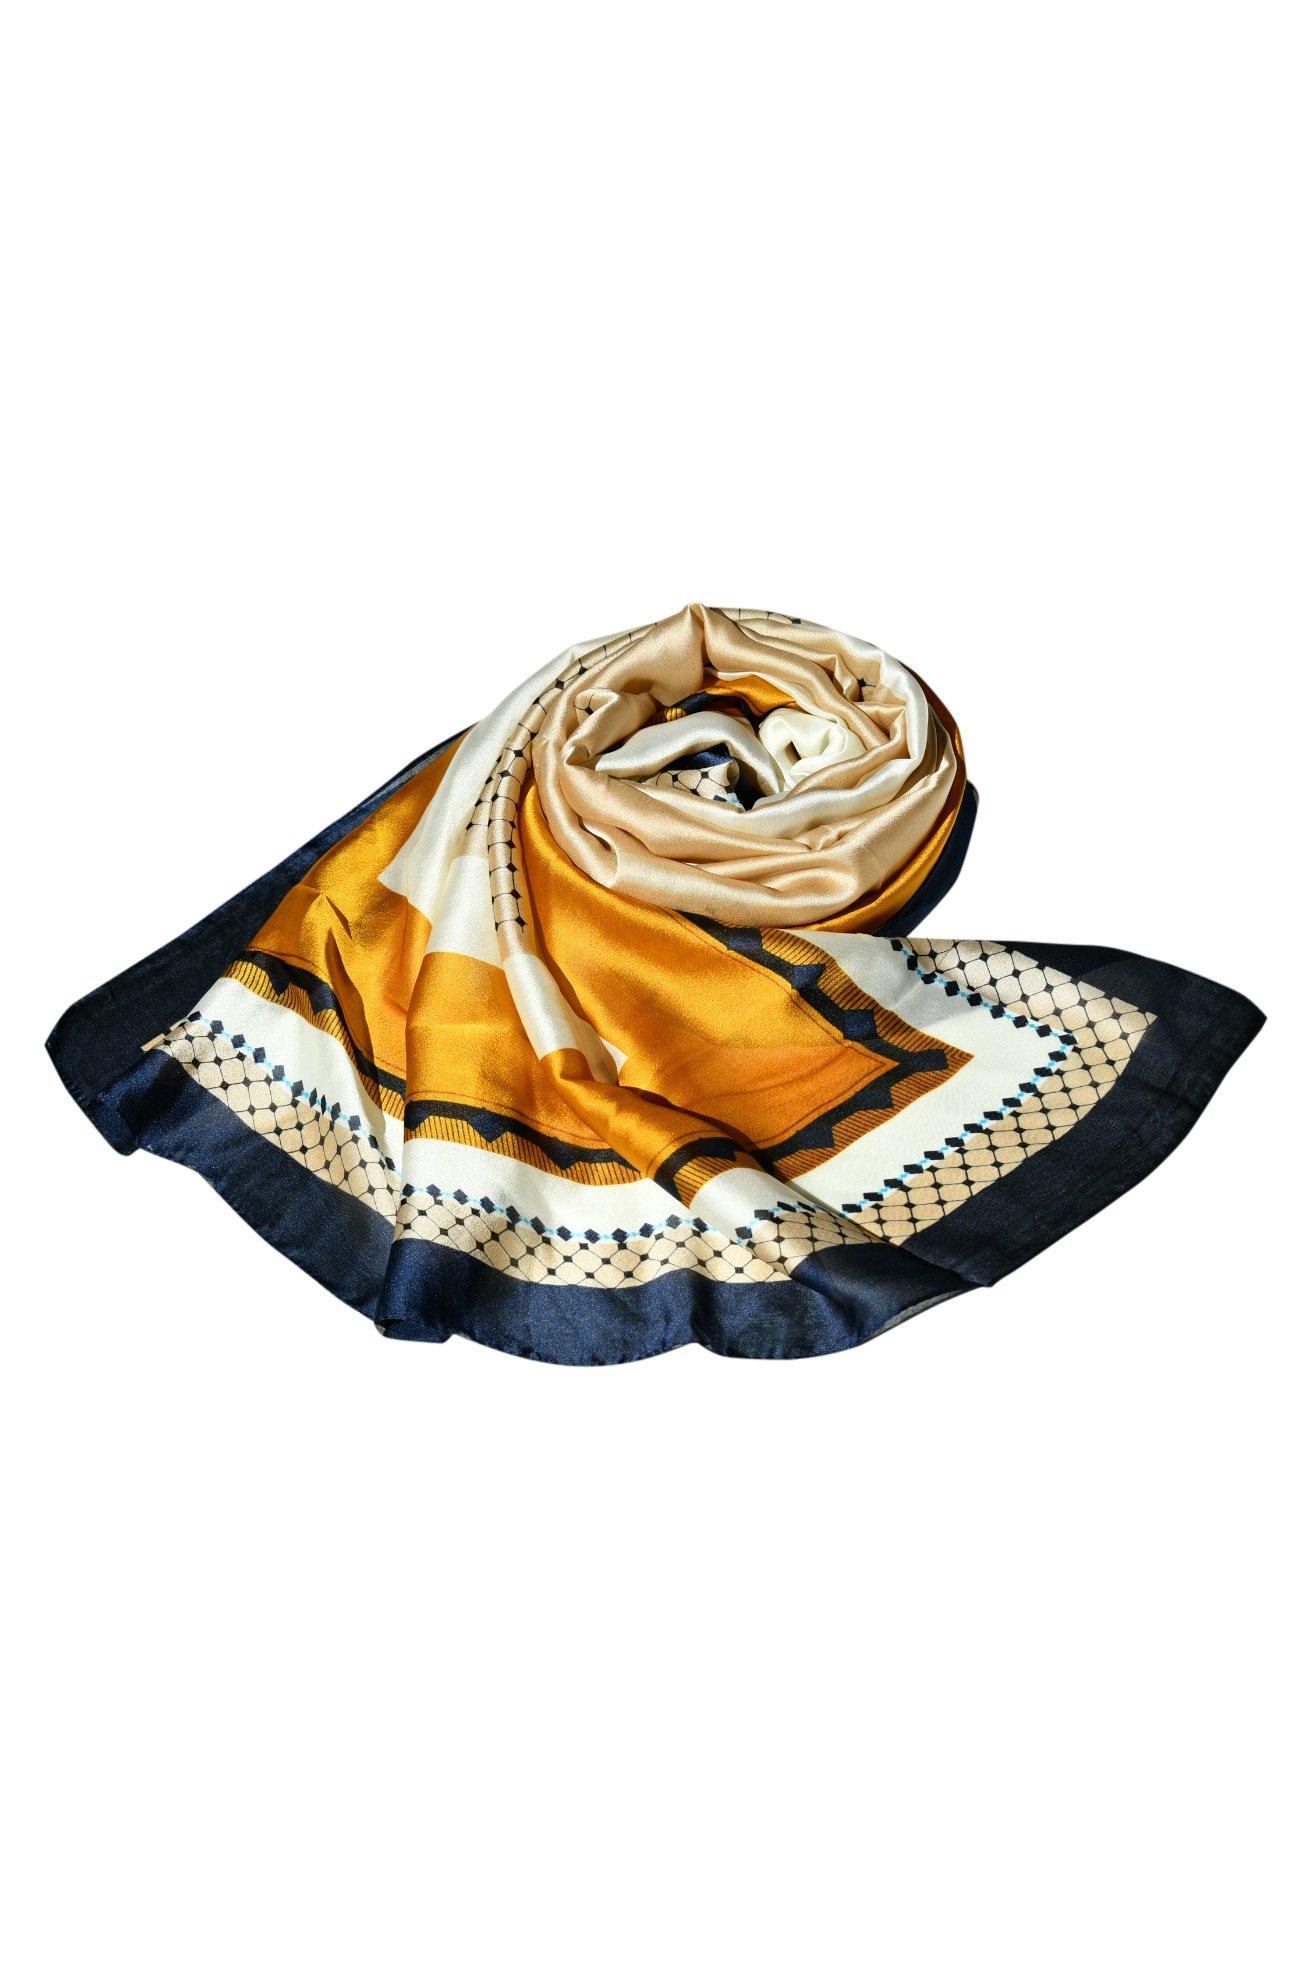 Высококачественная шаль, модельерский шелковый шарф с принтом для женщин, стильный шелковый платок, вечеринка, элегантность для любого наряда Blue Chilli, мультиколор